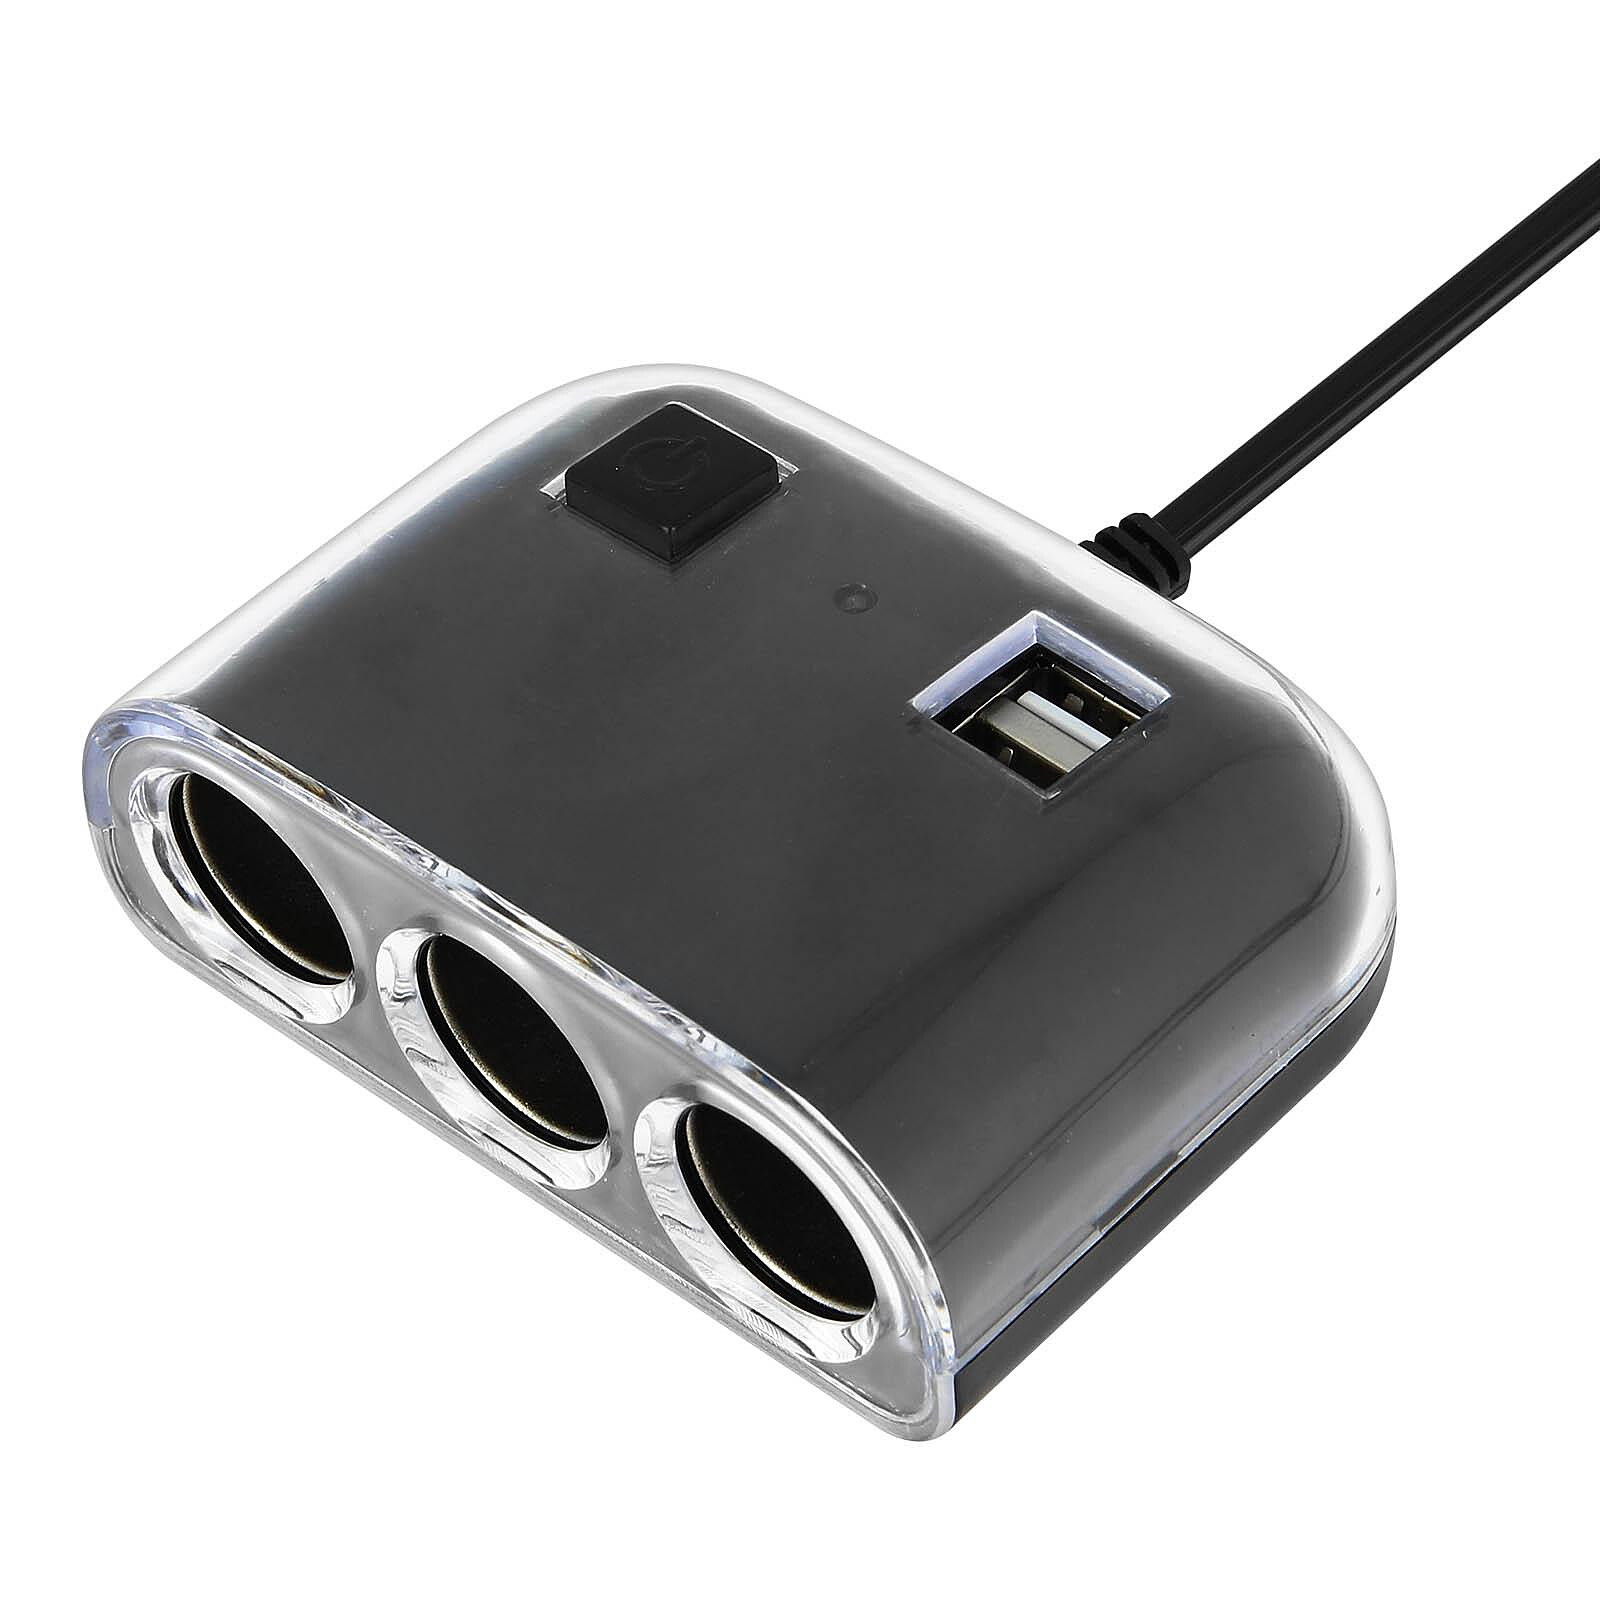 Mini chargeur double USB 3.1A sur prise allume-cigare - Chargeur allume- cigare - Garantie 3 ans LDLC